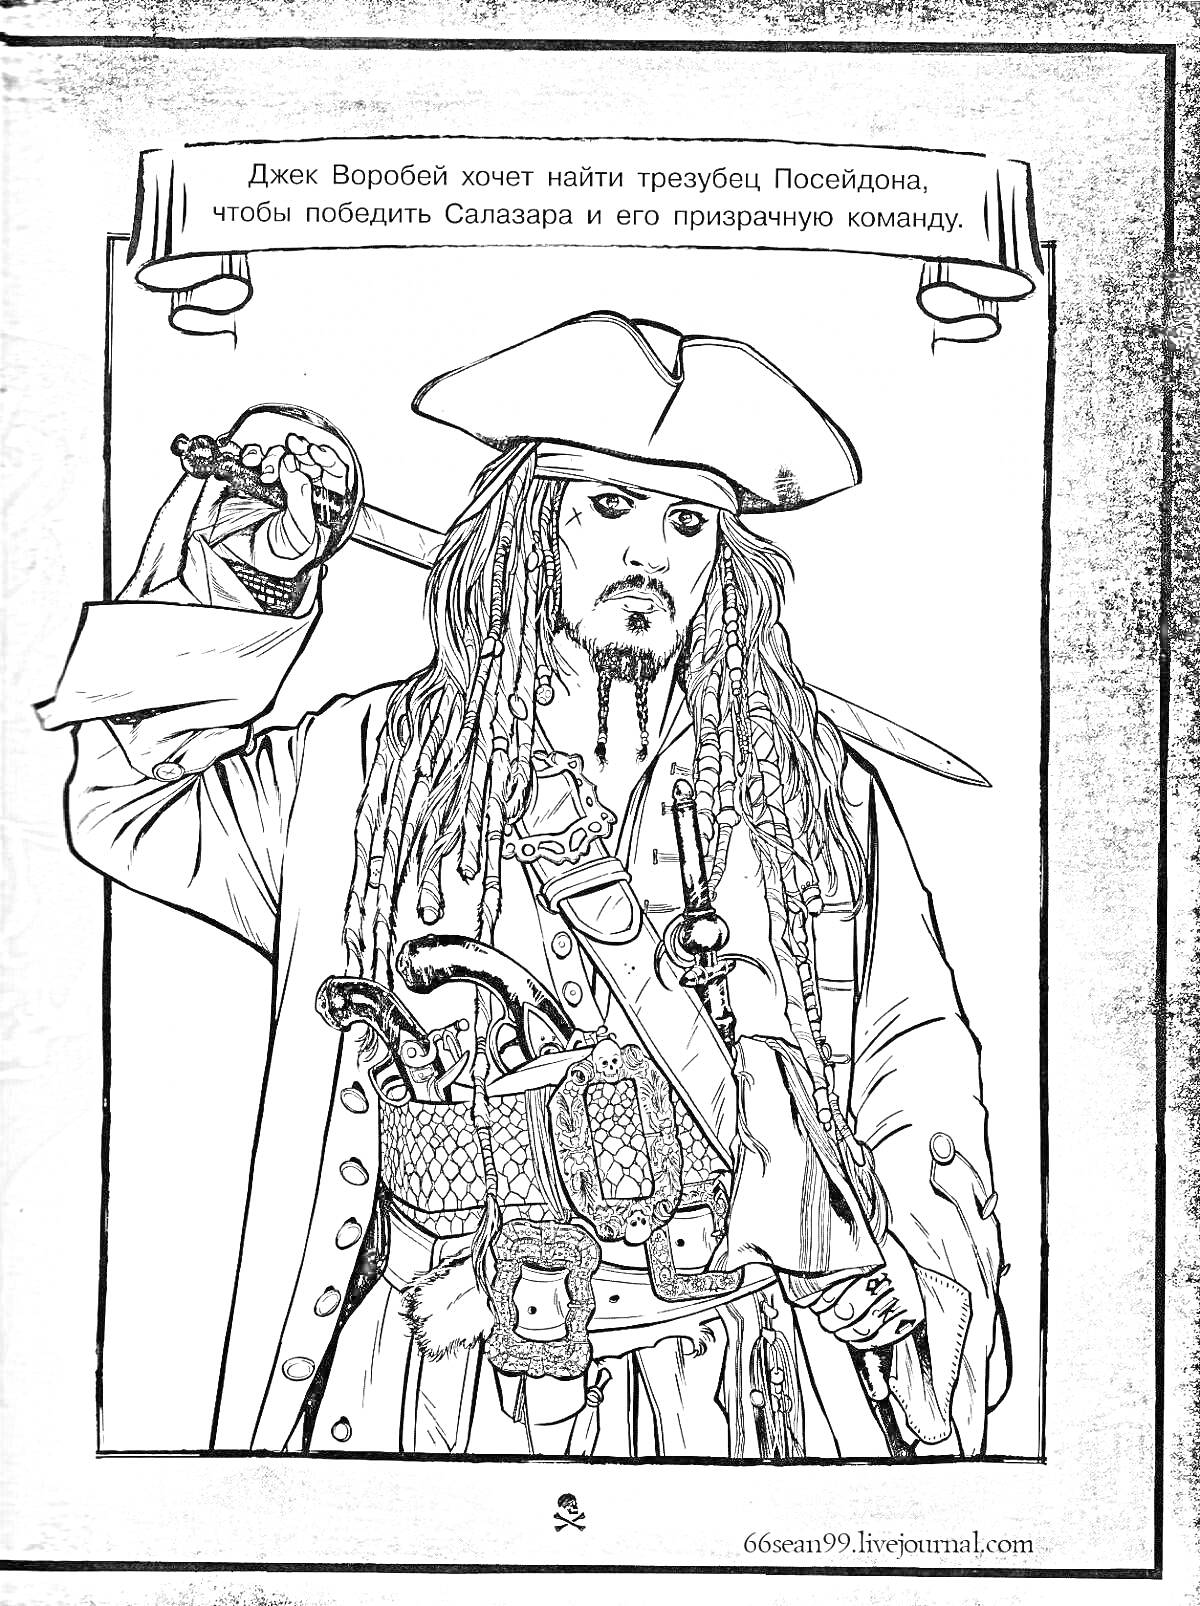 Раскраска Джек Воробей с саблей в пиратской одежде с длинными волосами, пиратской шляпой и множеством аксессуаров, держит саблю. Текст: 